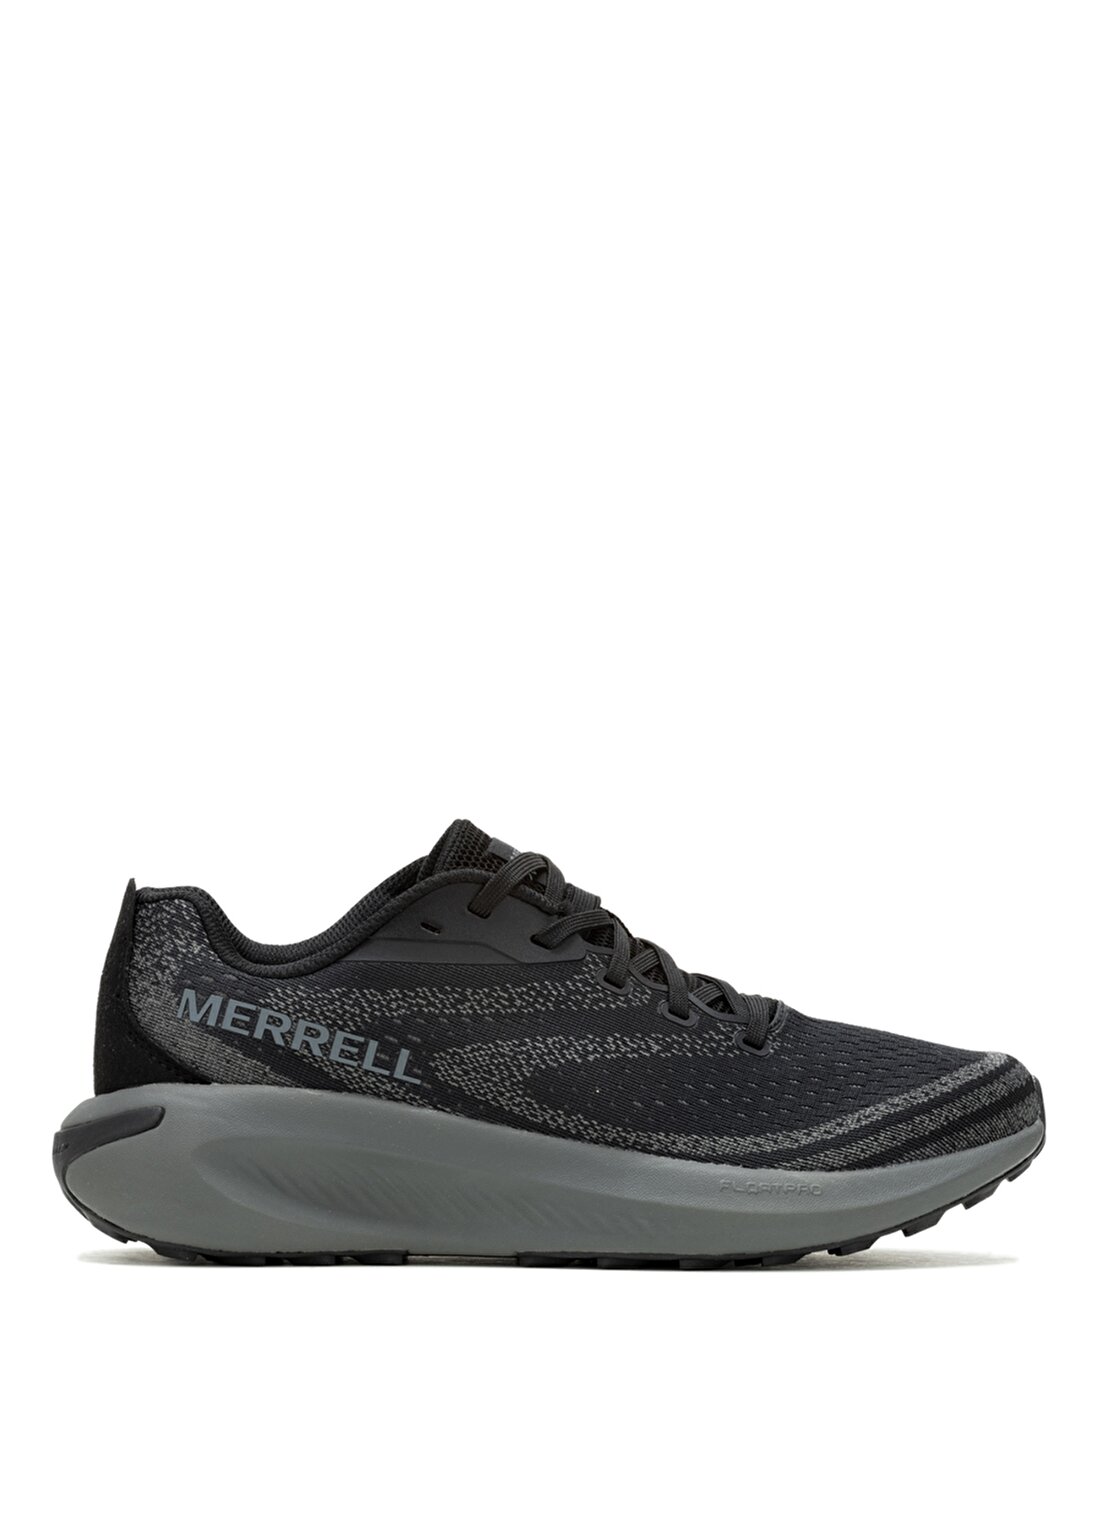 Merrell Siyah Erkek Koşu Ayakkabısı J068063_MORPHLITE